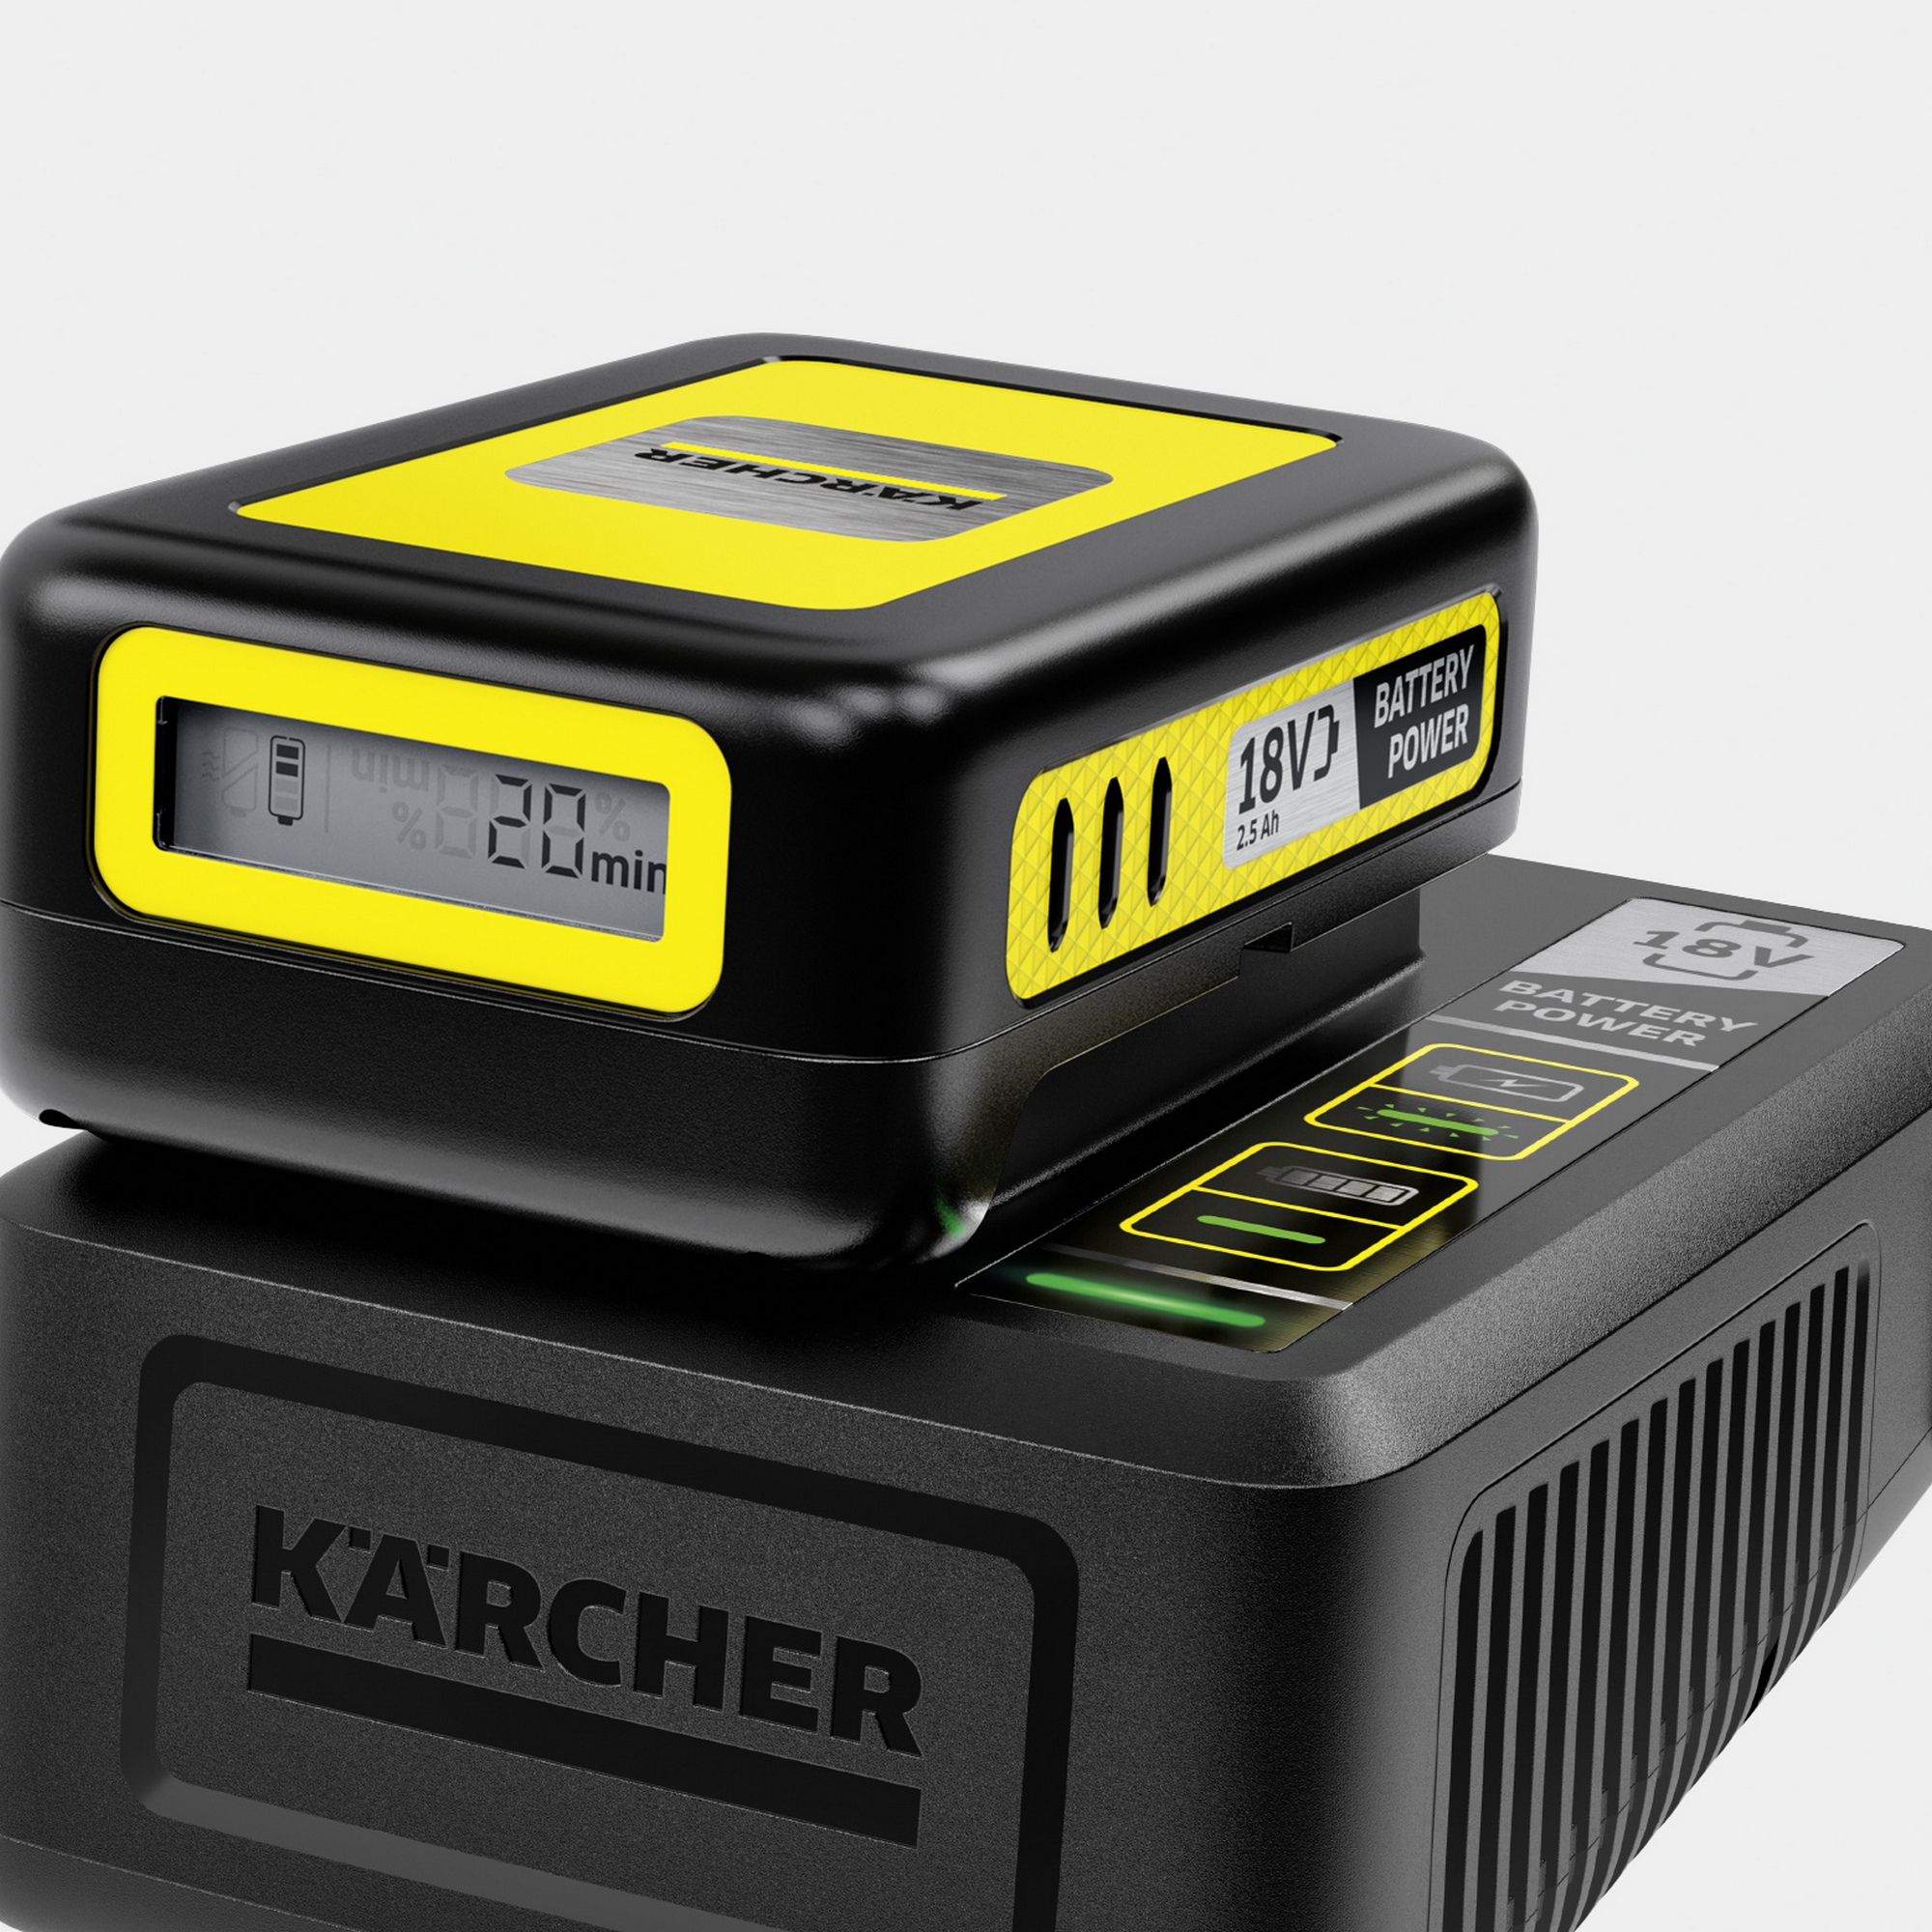 Starter-Kit 'Battery Power 18/25' Wechselakku mit Schnellladegerät, 18 V 2,5 Ah + product picture